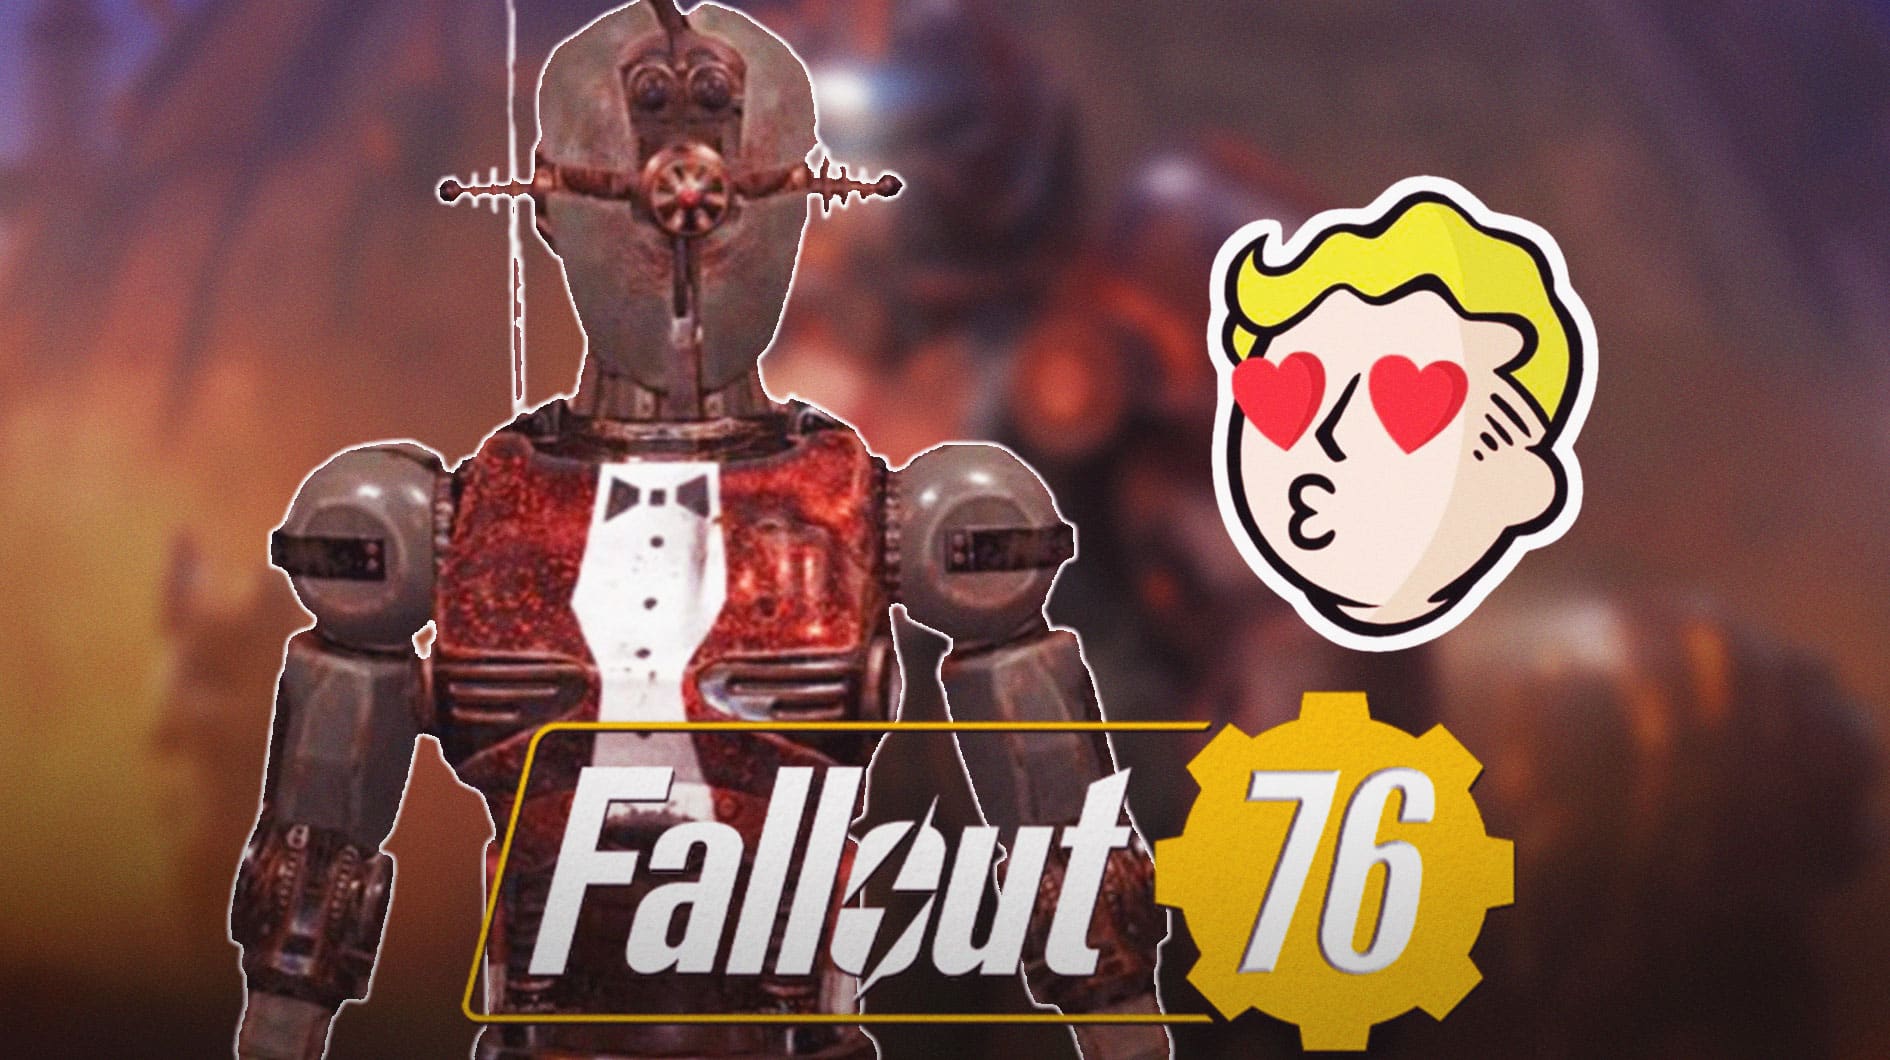 В Fallout 76 появился новый романтический штурмотрон